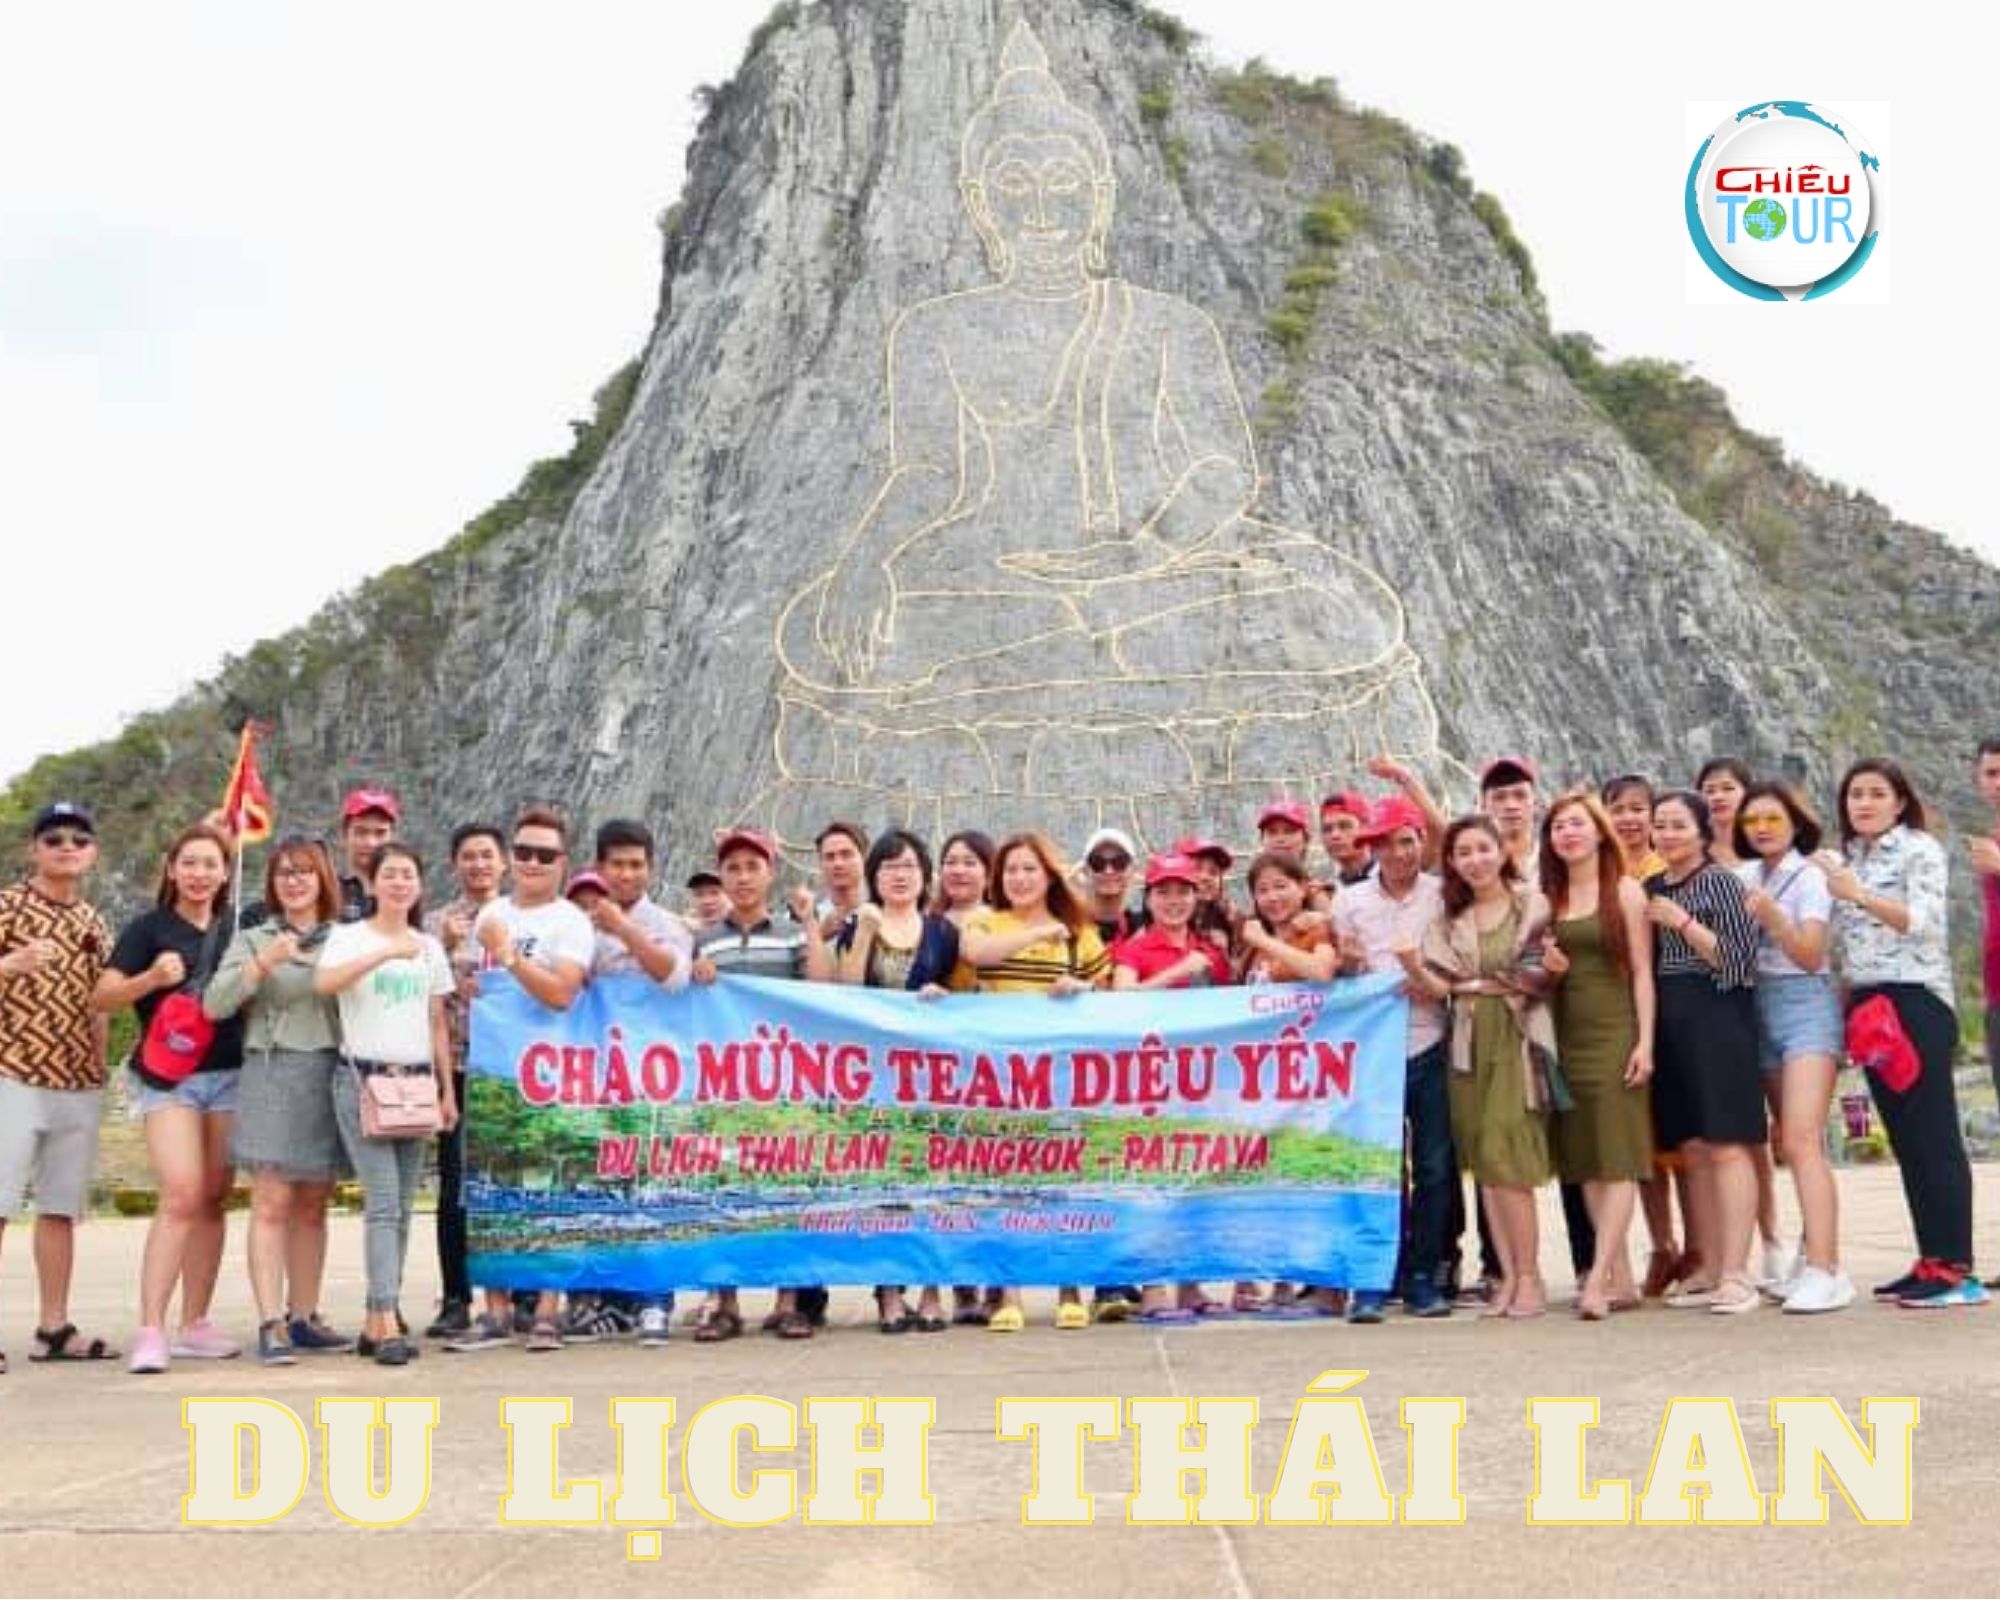 Tour du lịch Thái Lan cao cấp